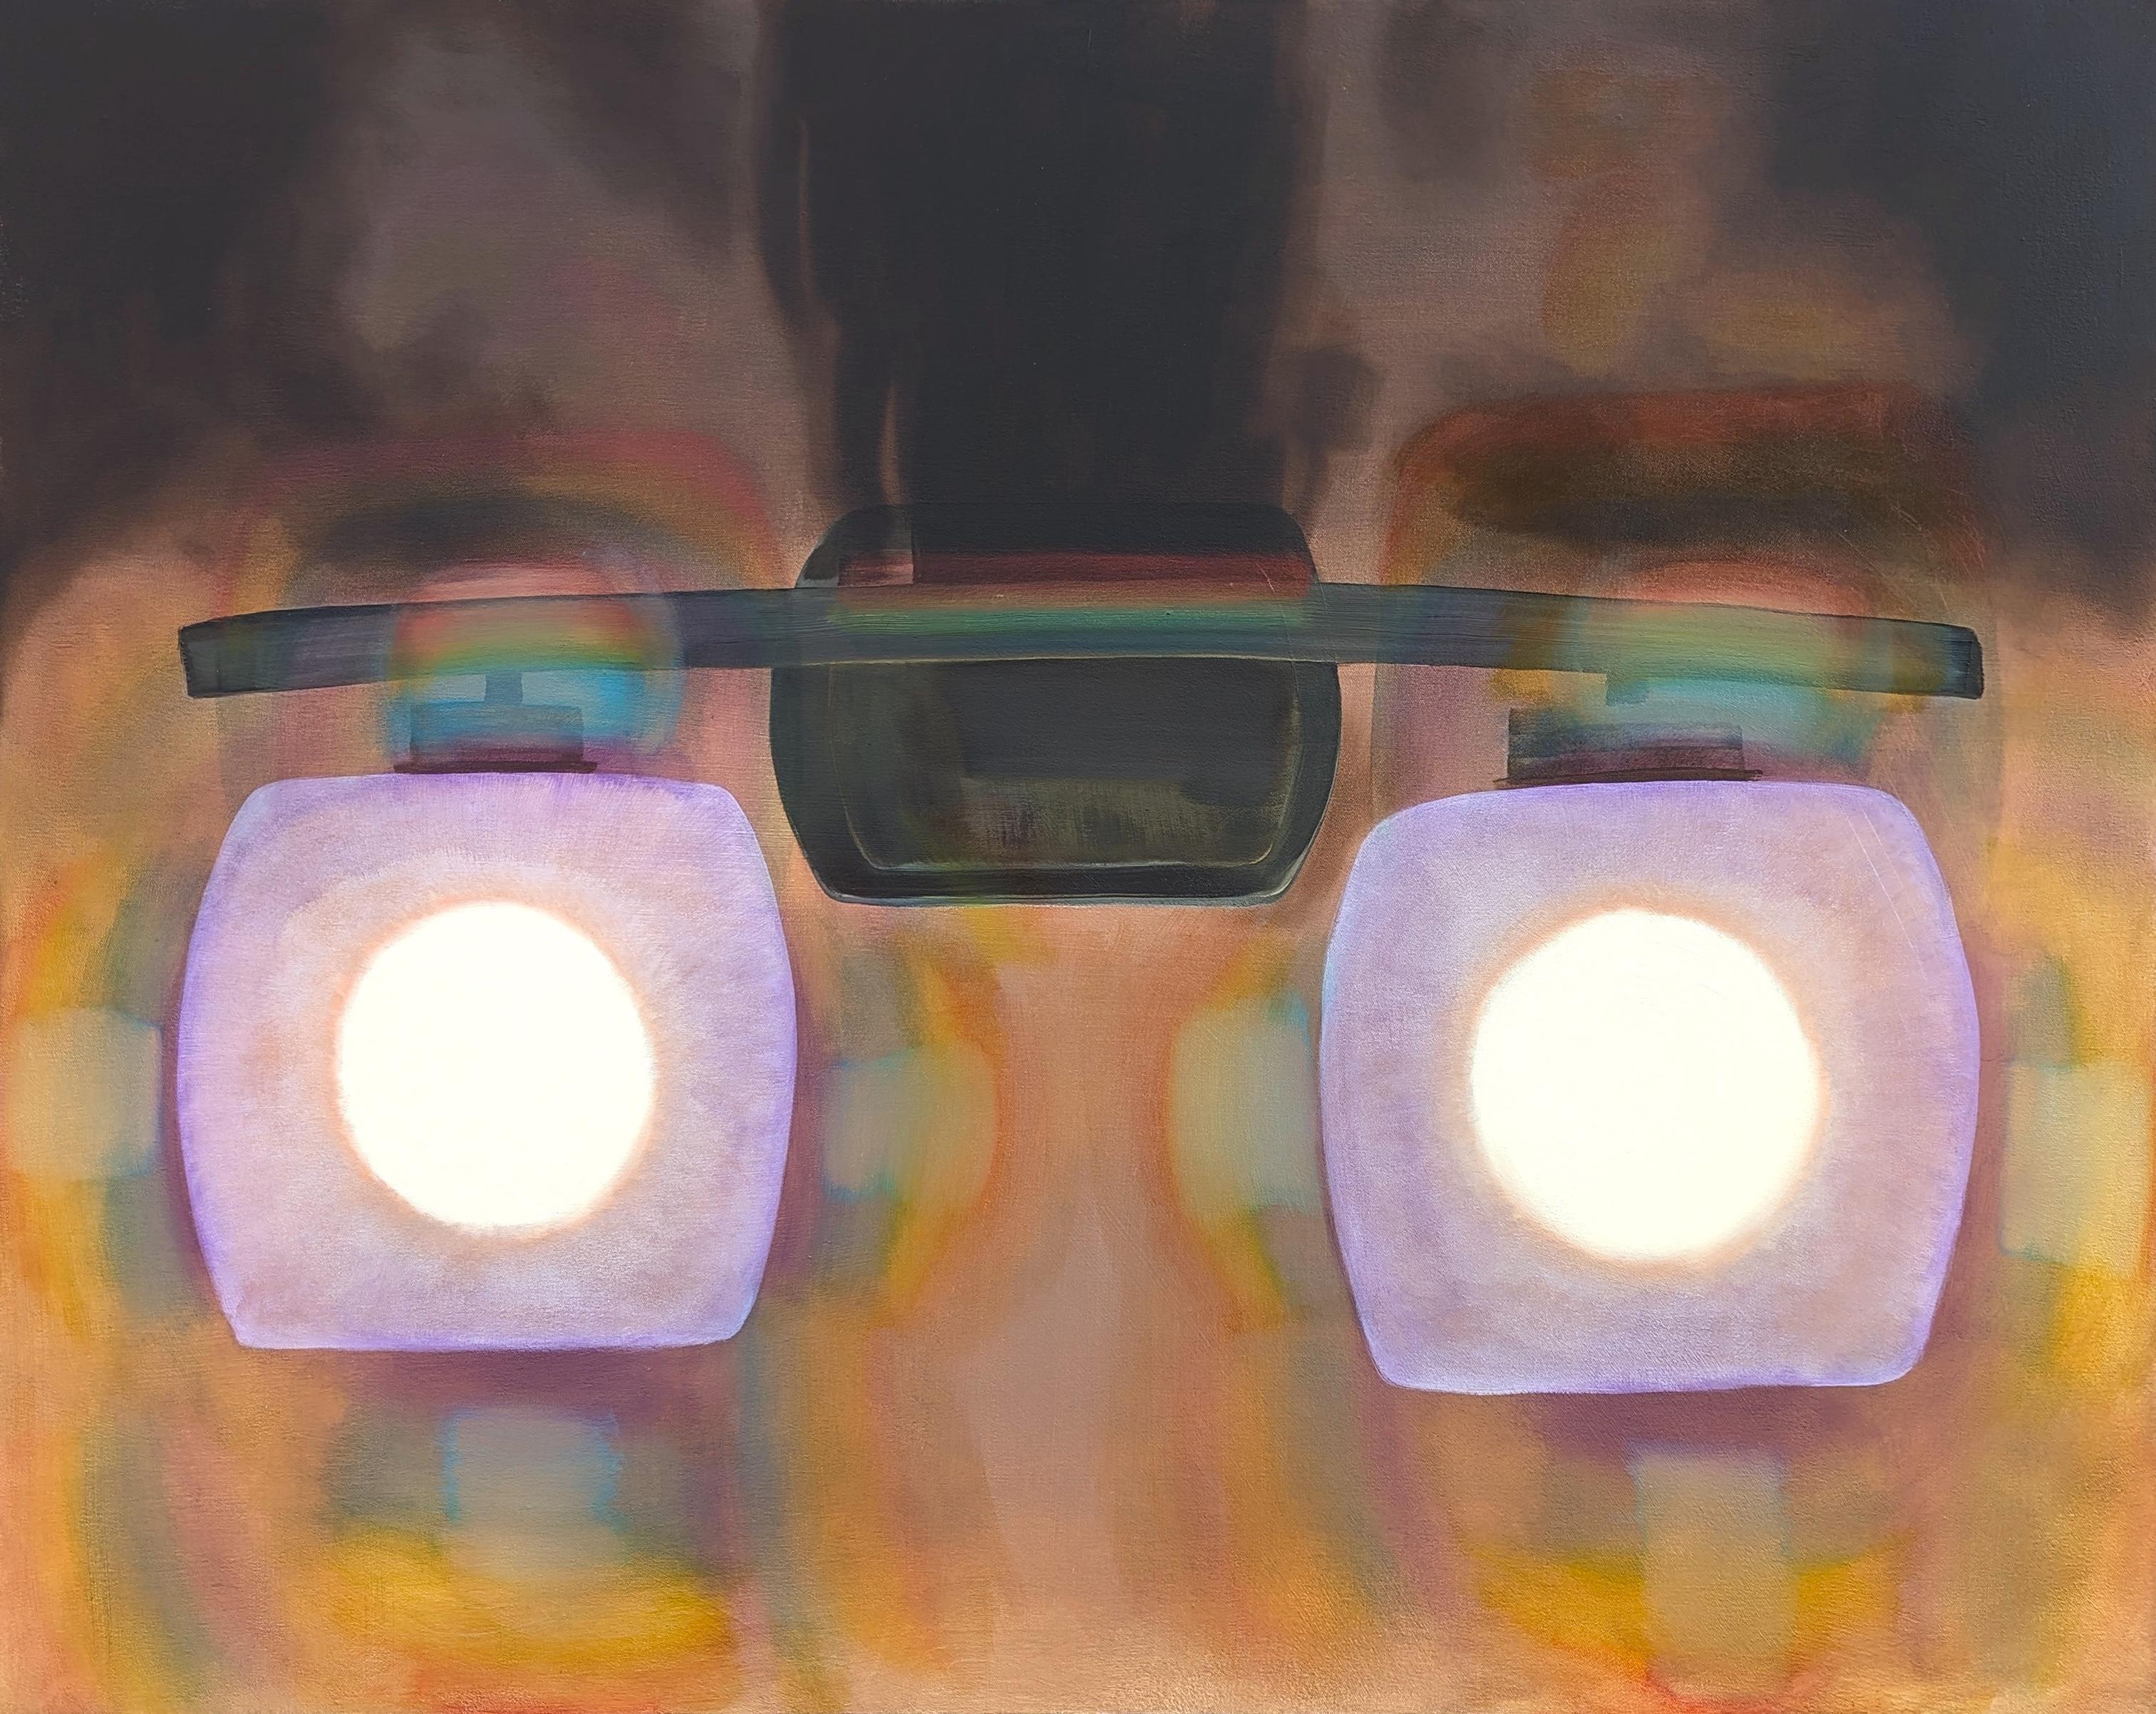 Abstract Painting Tommy Taylor - "Friend's House" Abstrait contemporain en tons de joyaux Gros plan sur les Lights d'une voiture